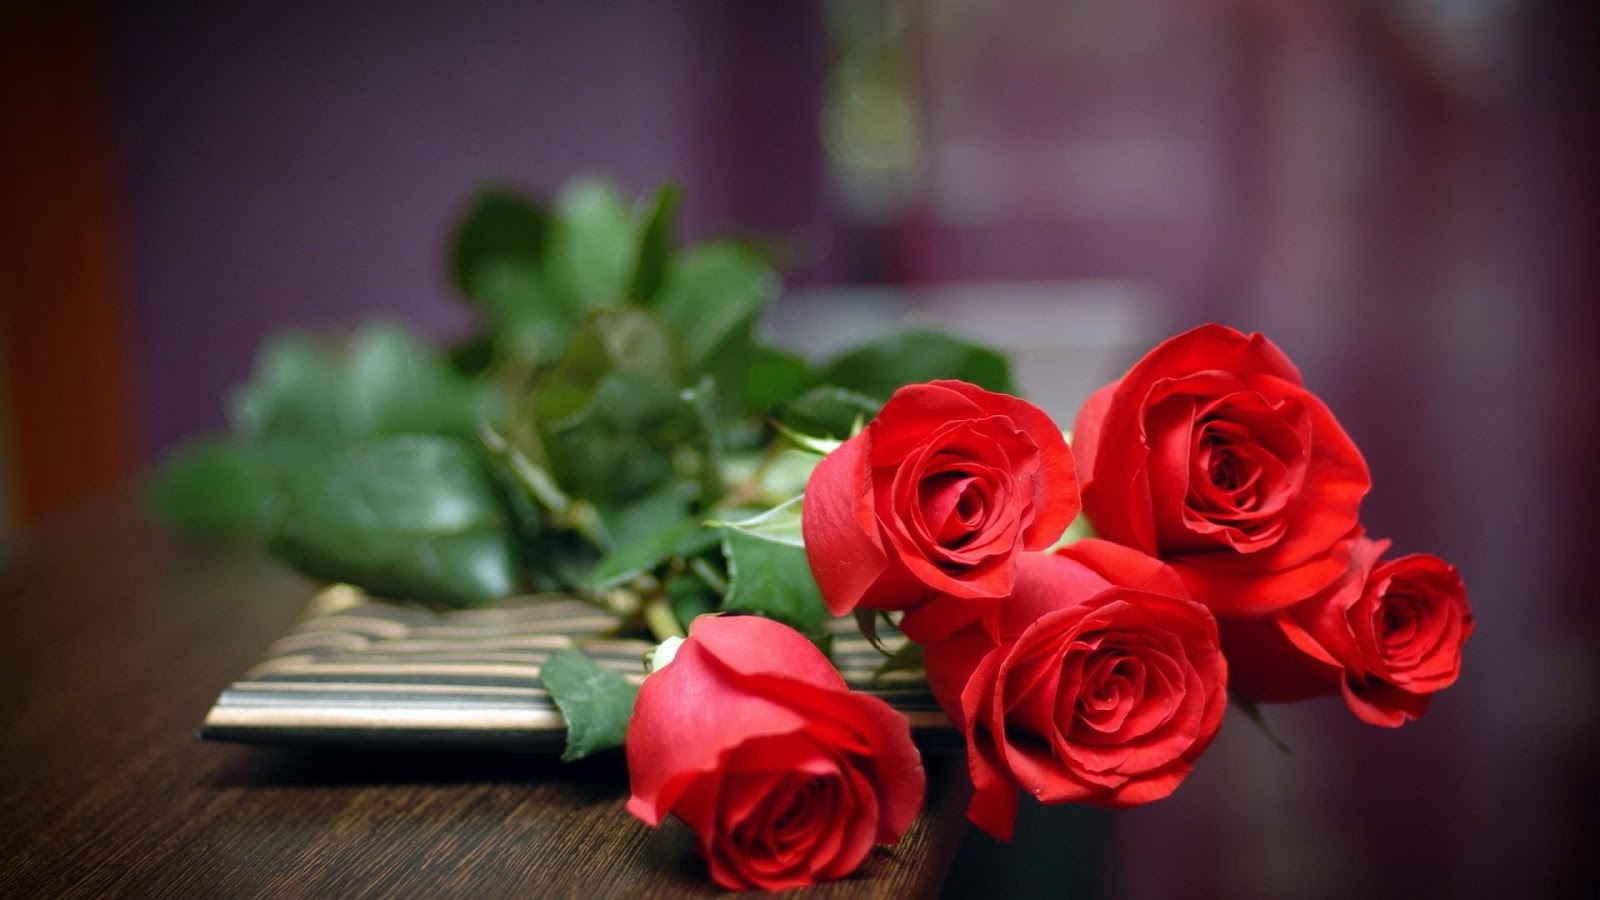 Tổng hợp hình ảnh hoa Hồng đỏ đẹp nhất - Ảnh đẹp hoa hồng